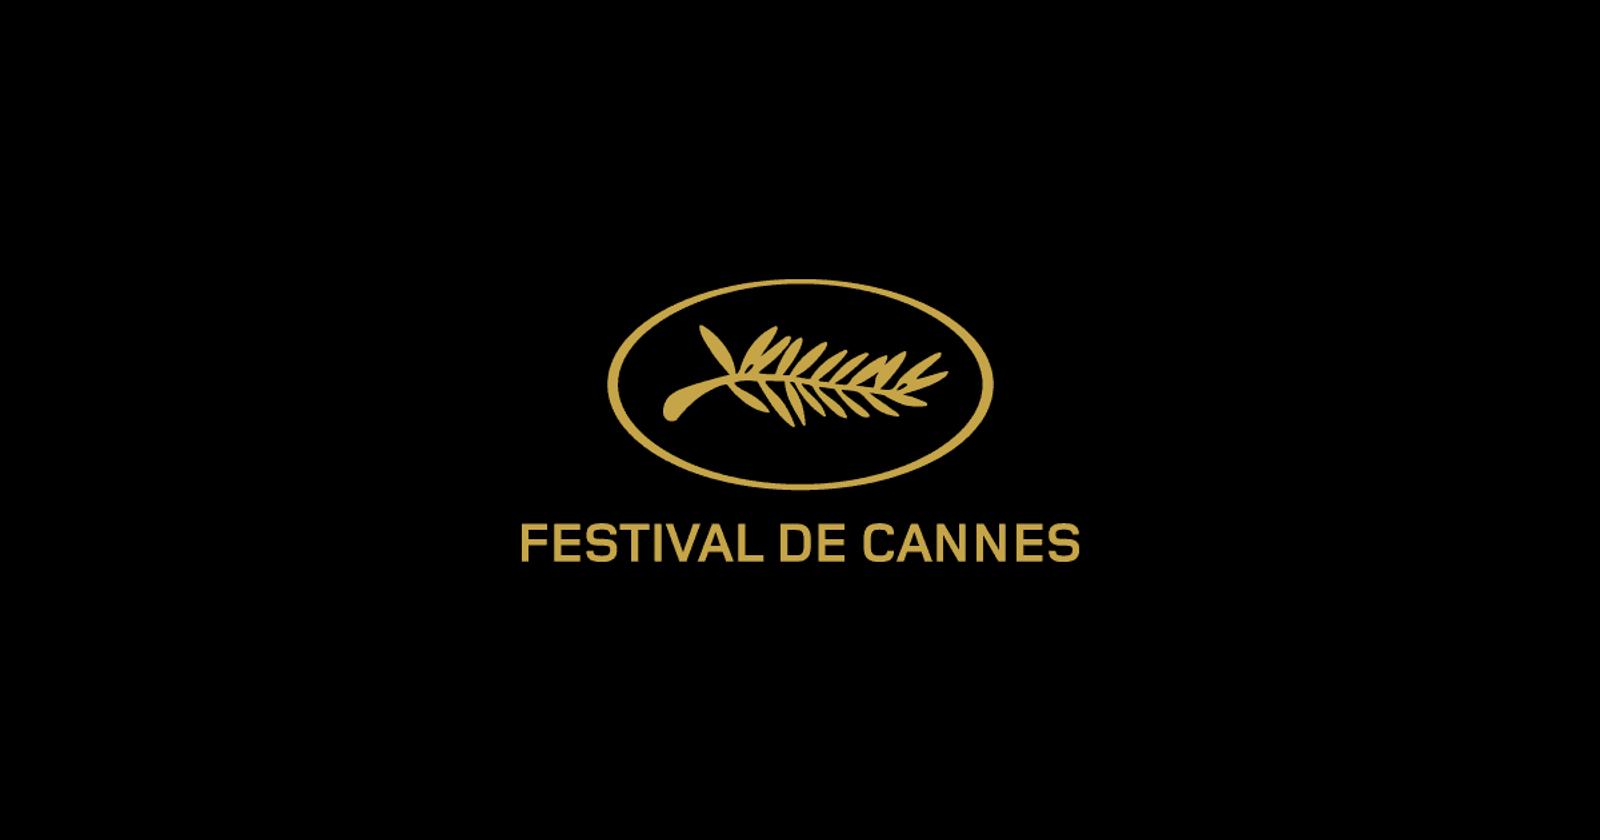 Festival de Cannes Festival de cinéma international depuis plus de 75 ans